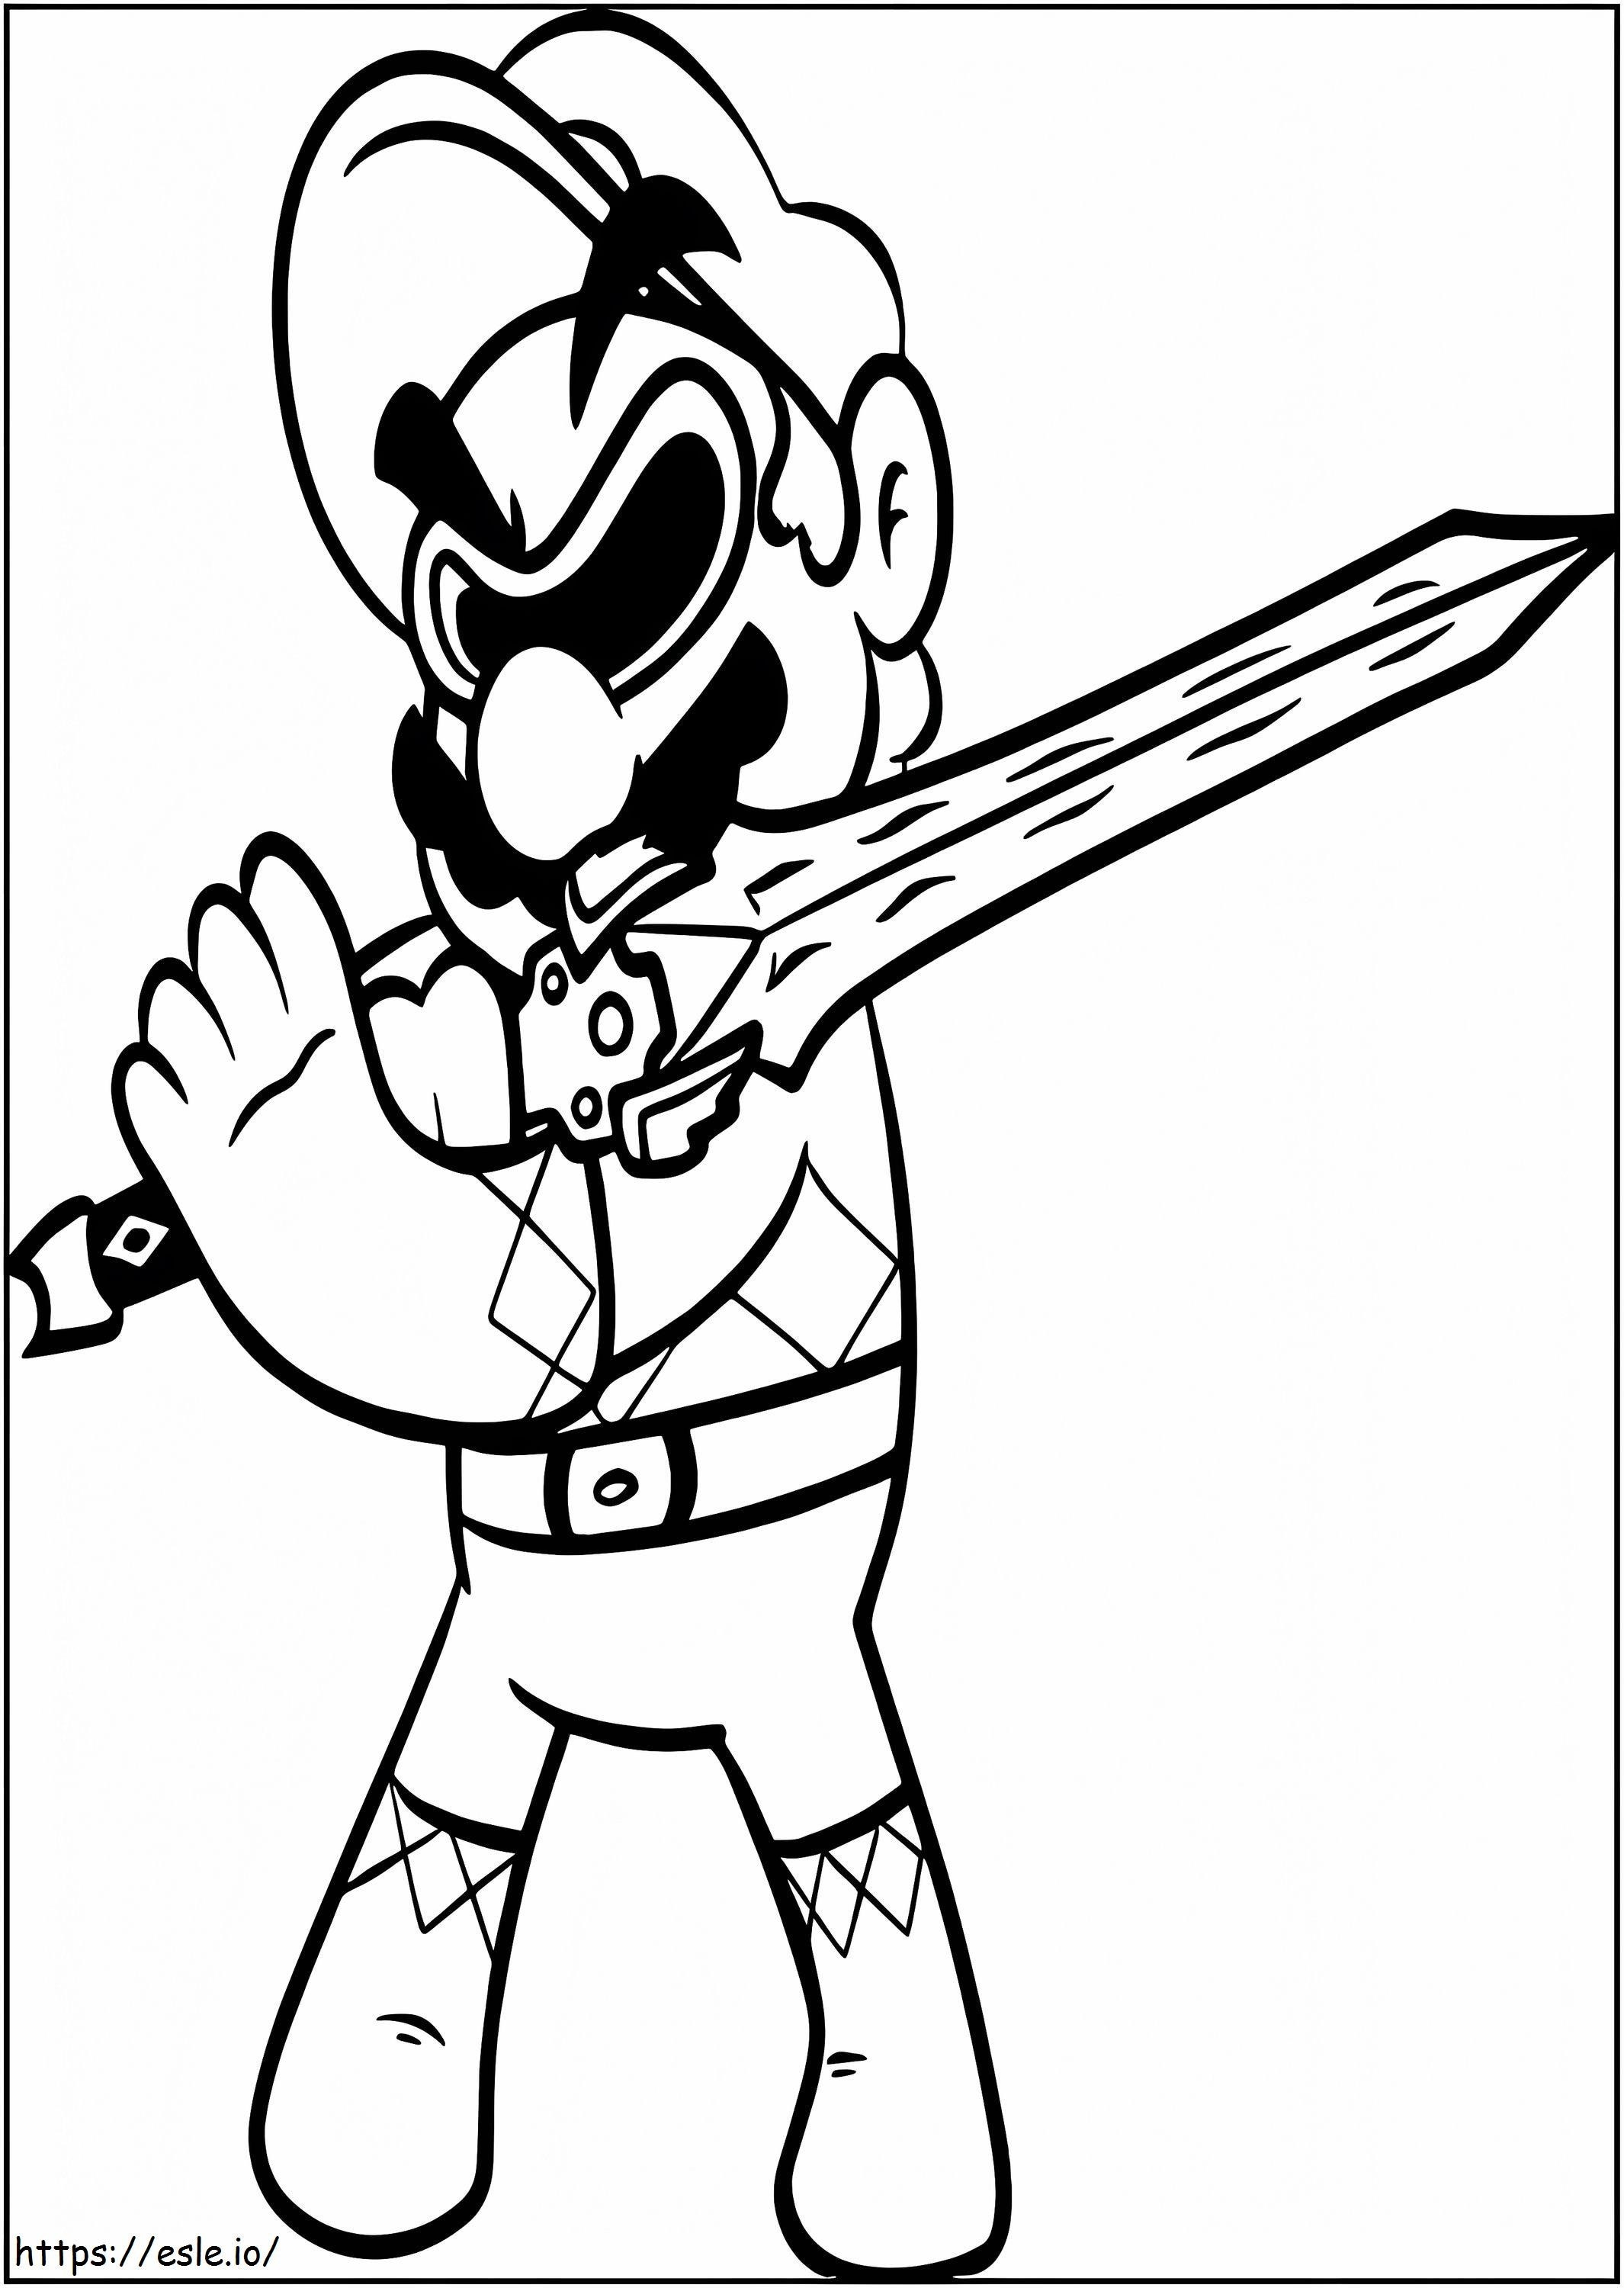 Coloriage Mario avec épée 727X1024 à imprimer dessin